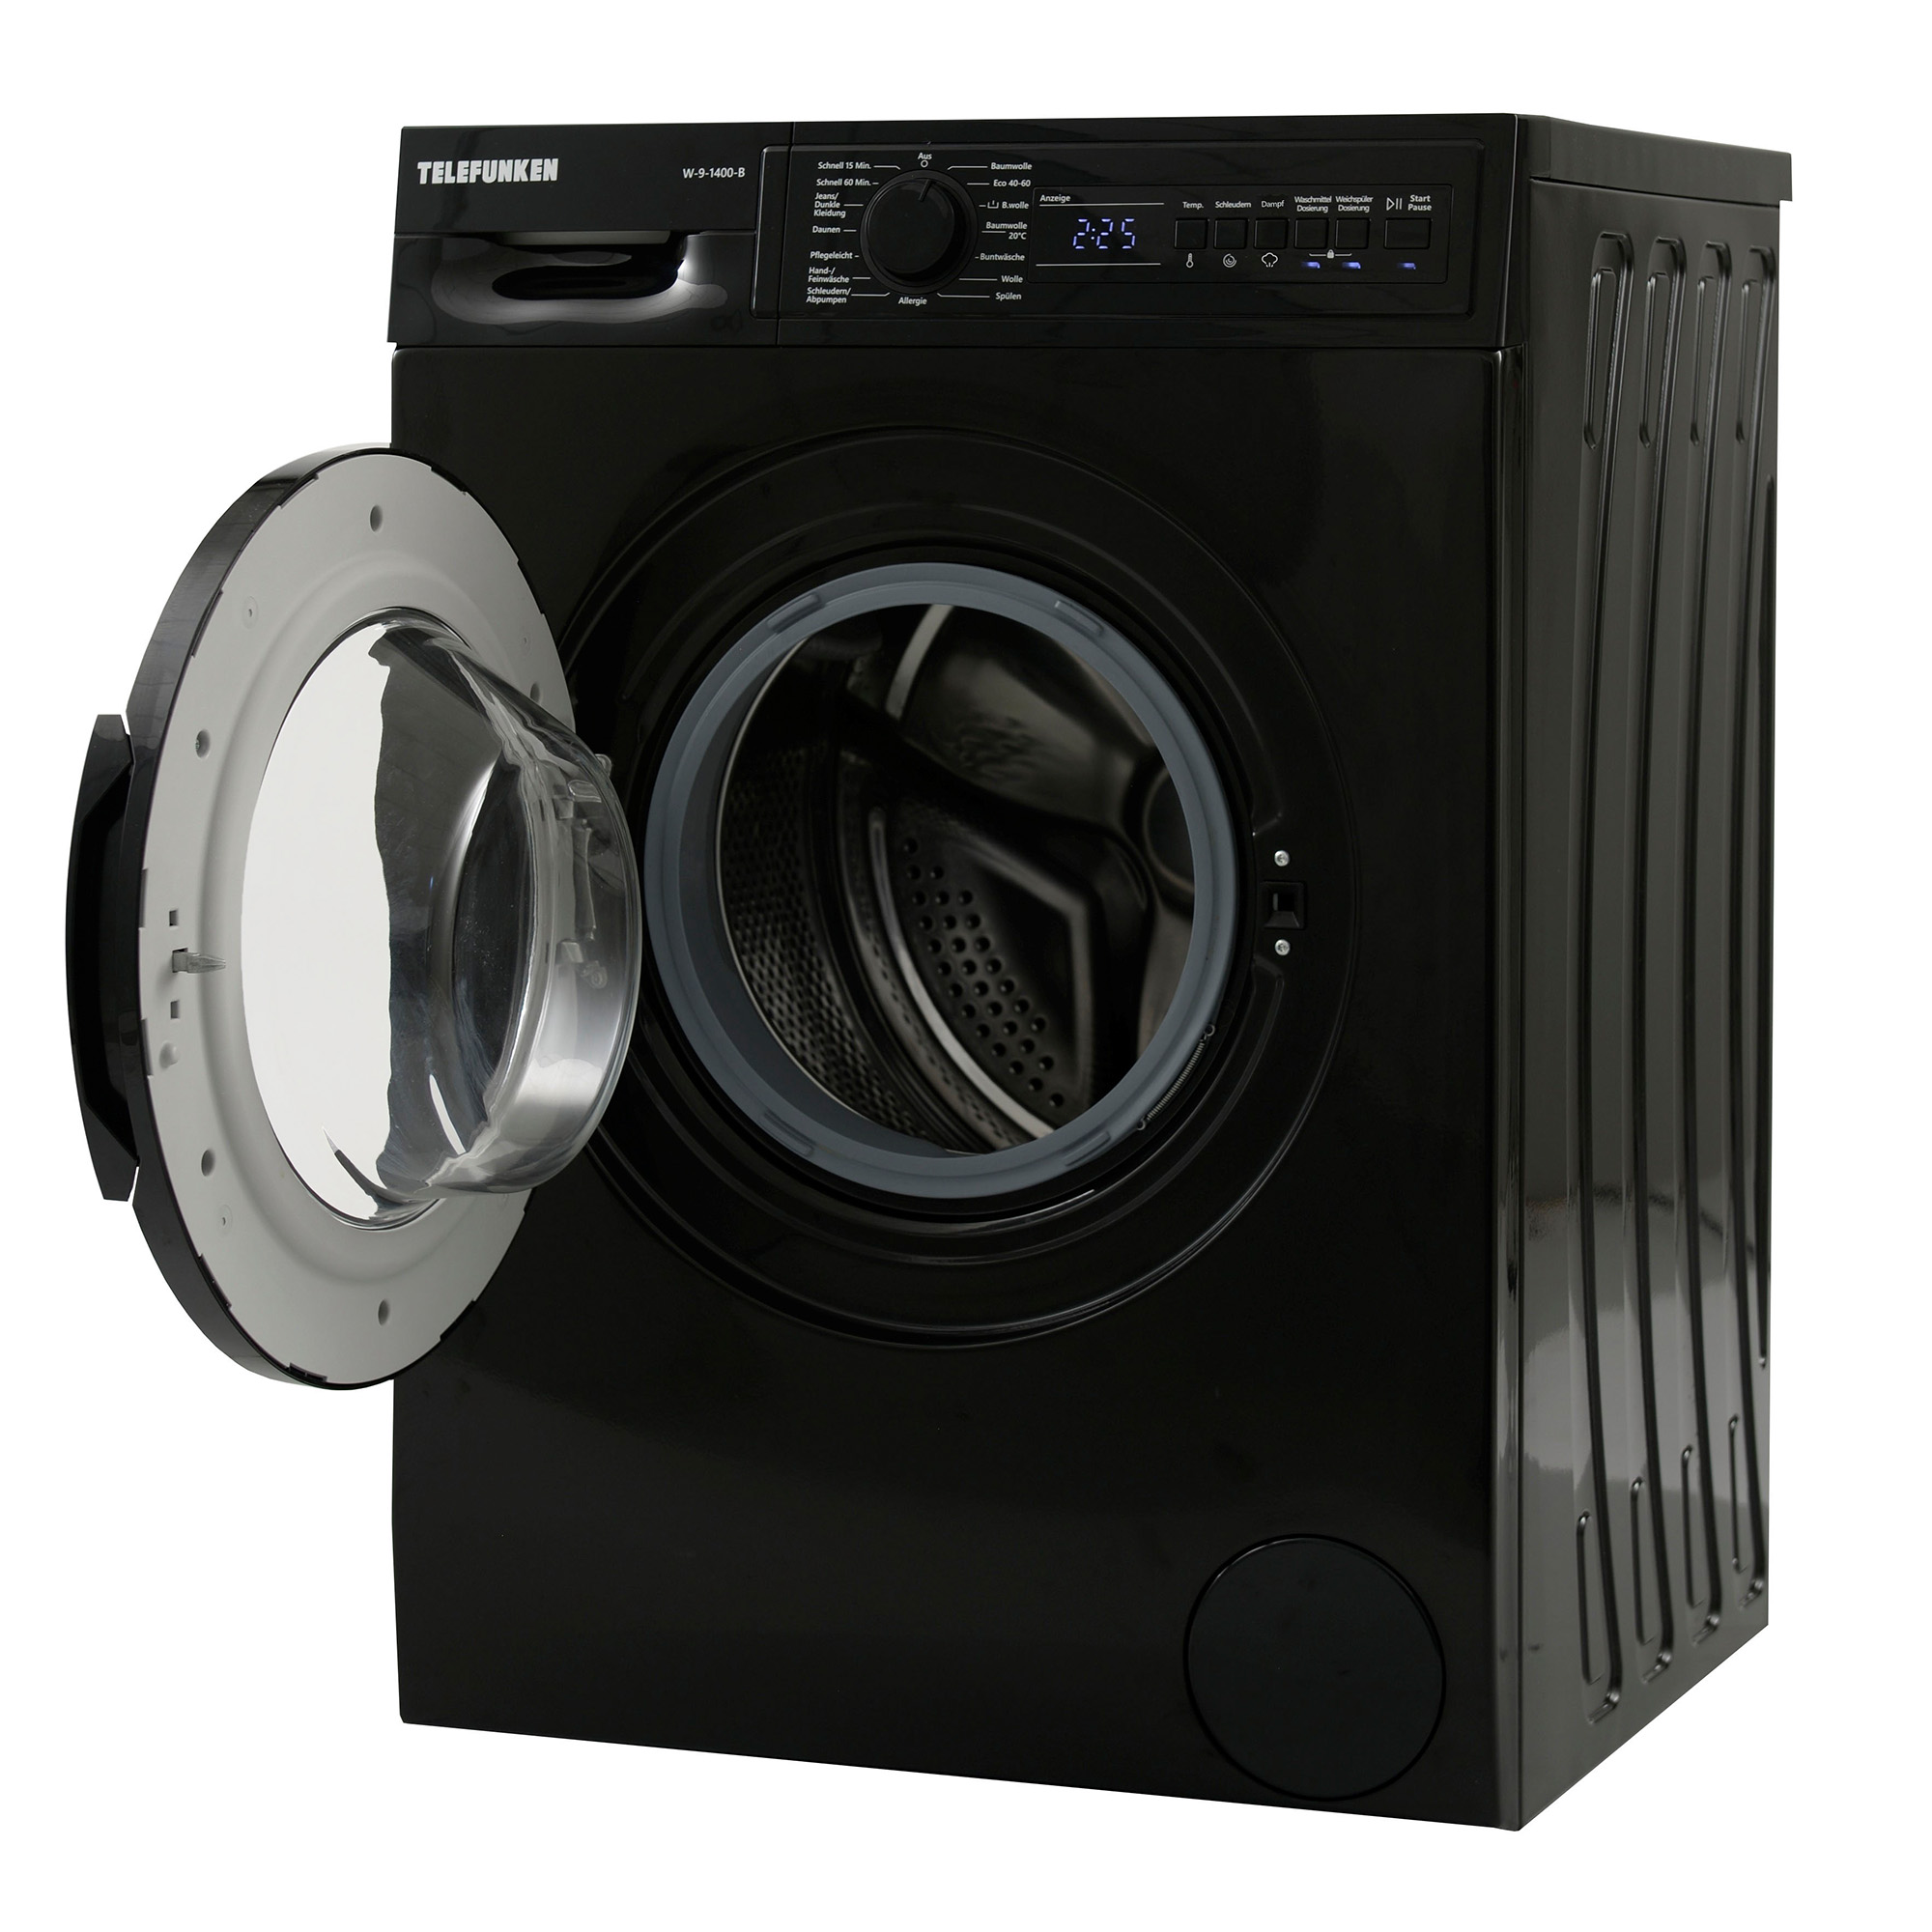 (9 TELEFUNKEN kg, W-9-1400-B Waschmaschine B)